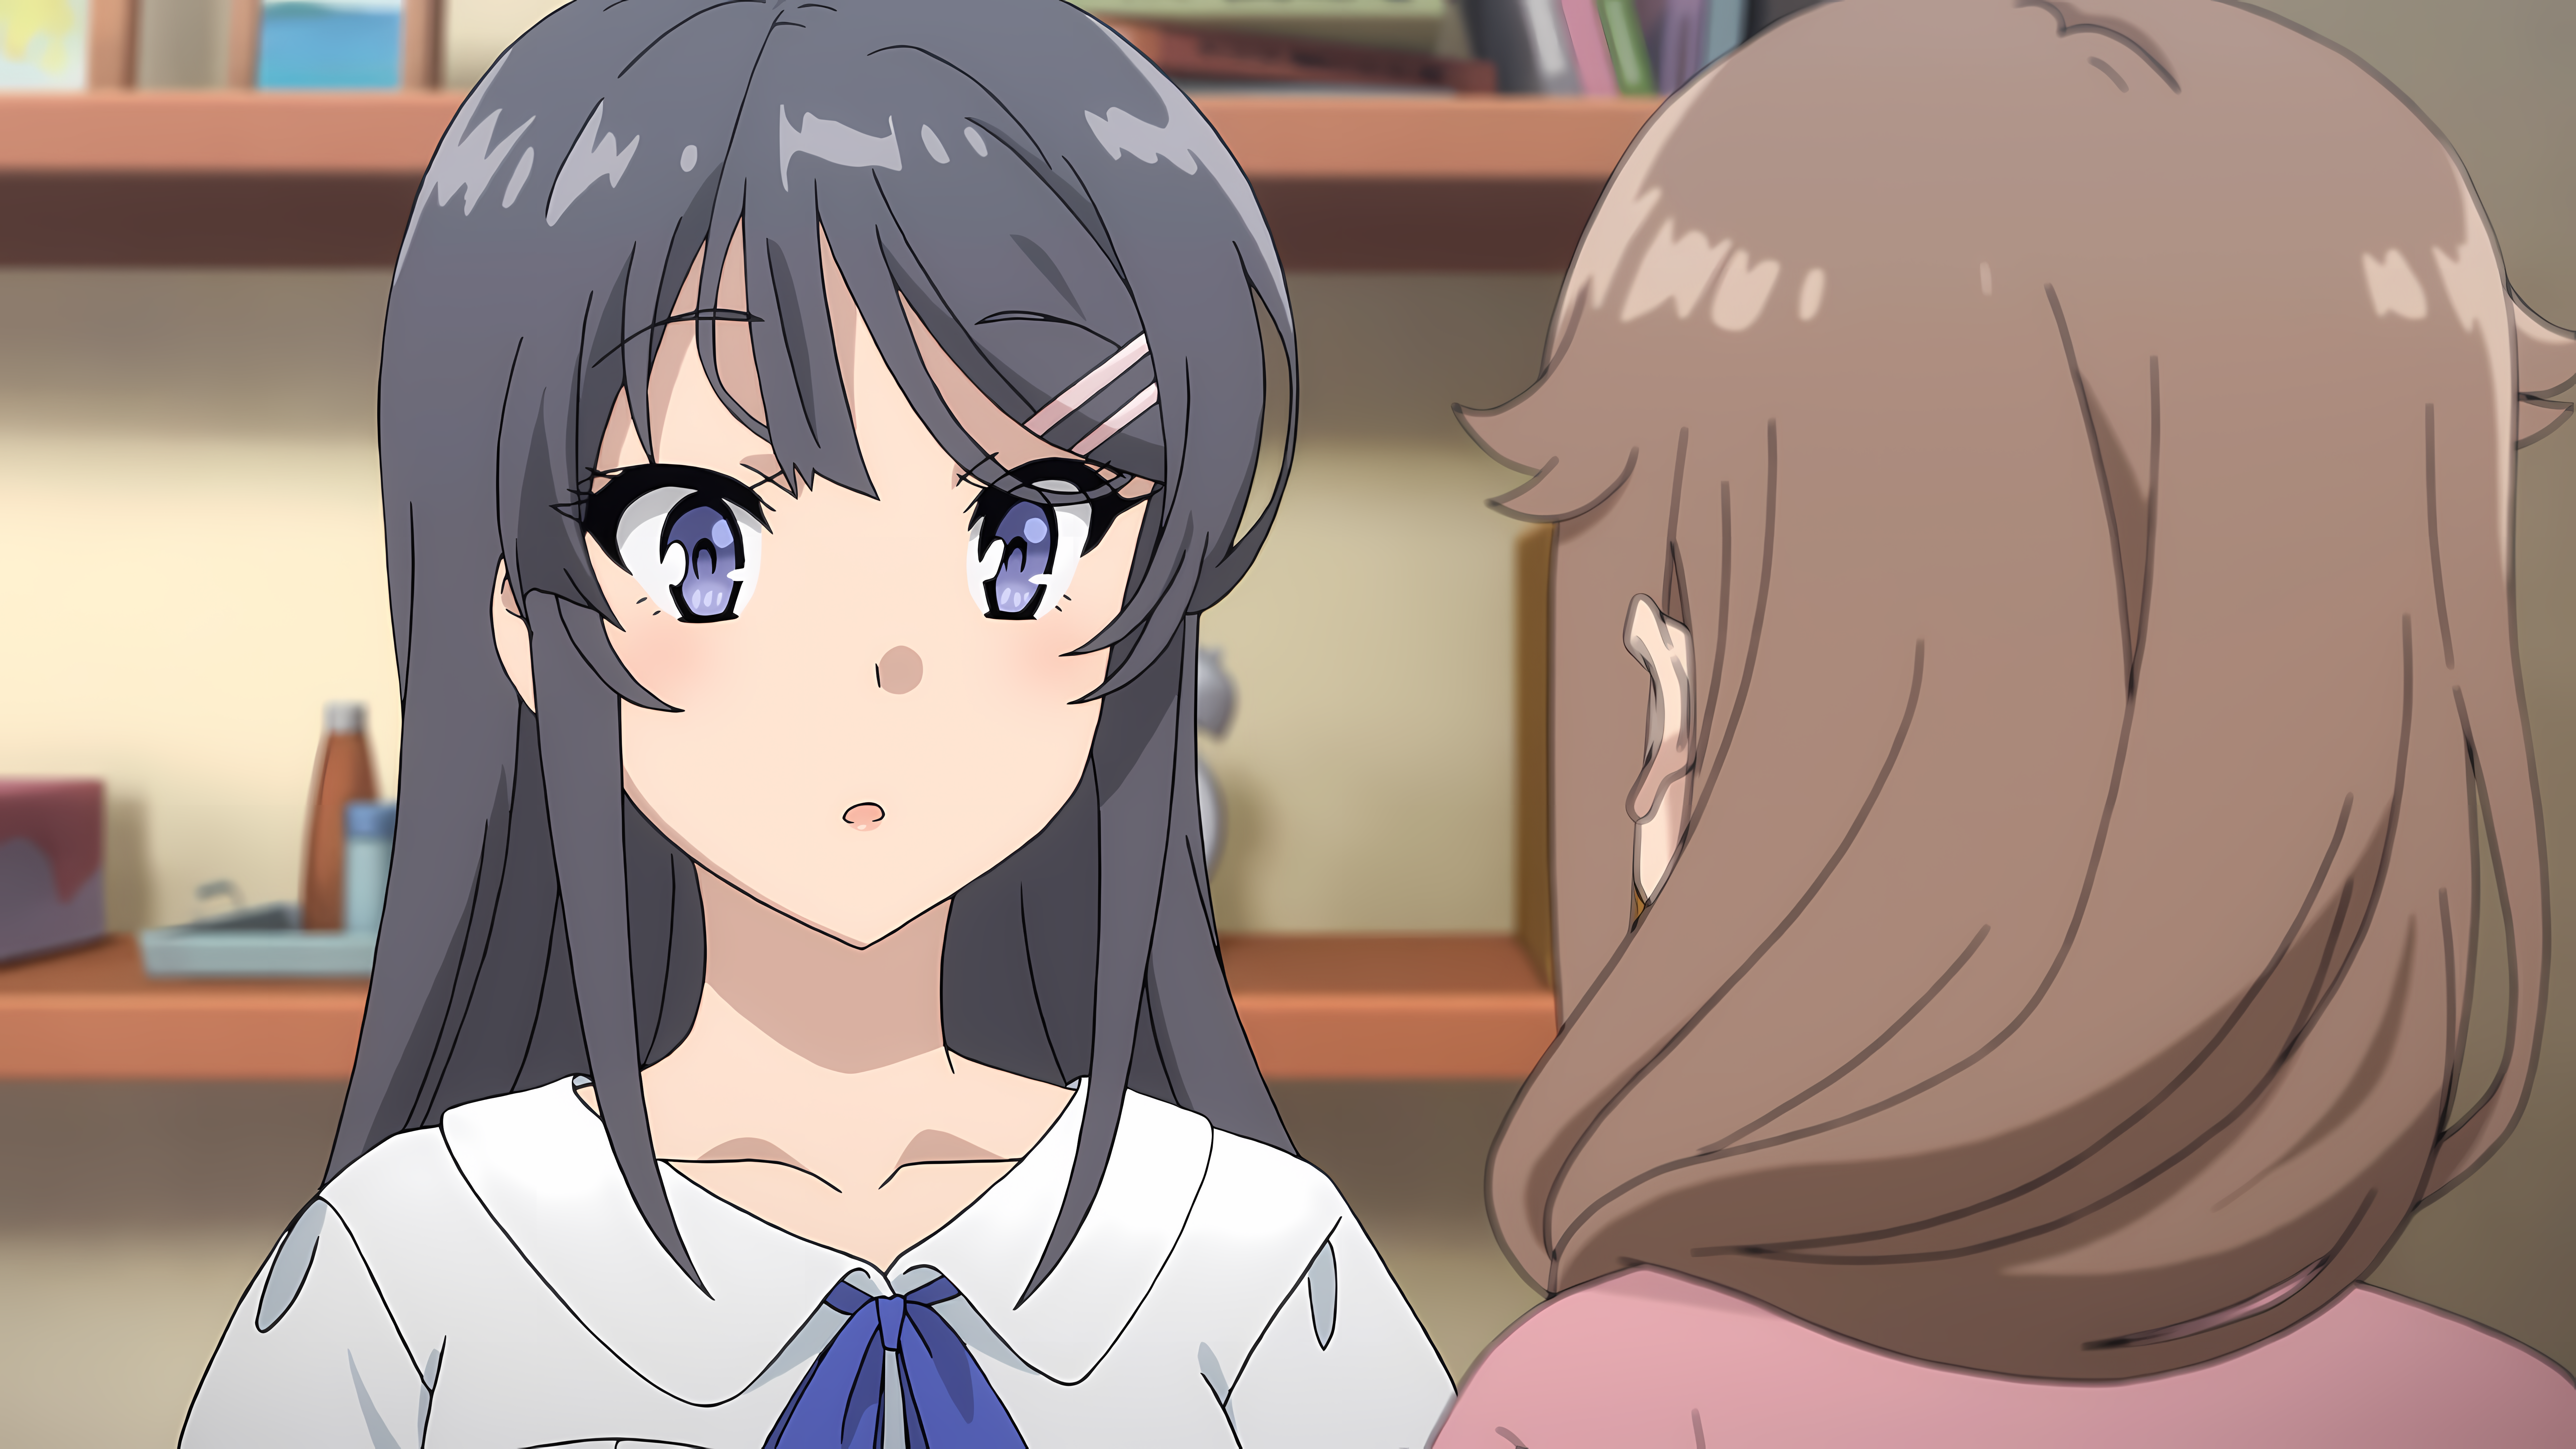 Sakurajima Mai Seishun Buta Yar Wa Bunny Girl Senpai No Yume Wo Minai Anime Anime Girls 7680x4320